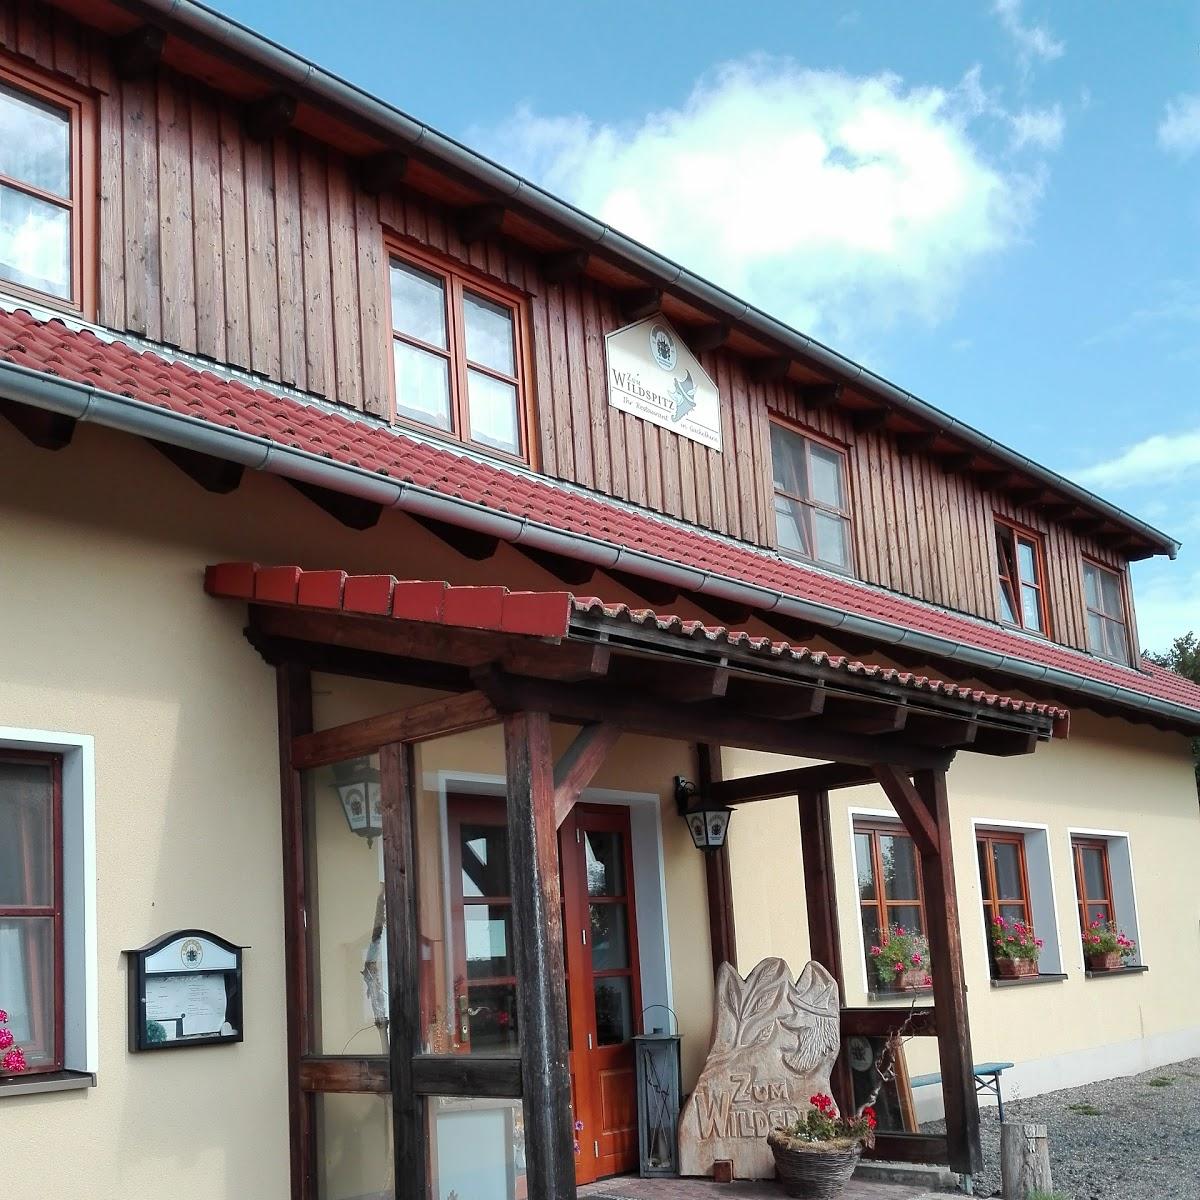 Restaurant "Gaststätte Zum Wildspitz" in  Maroldsweisach